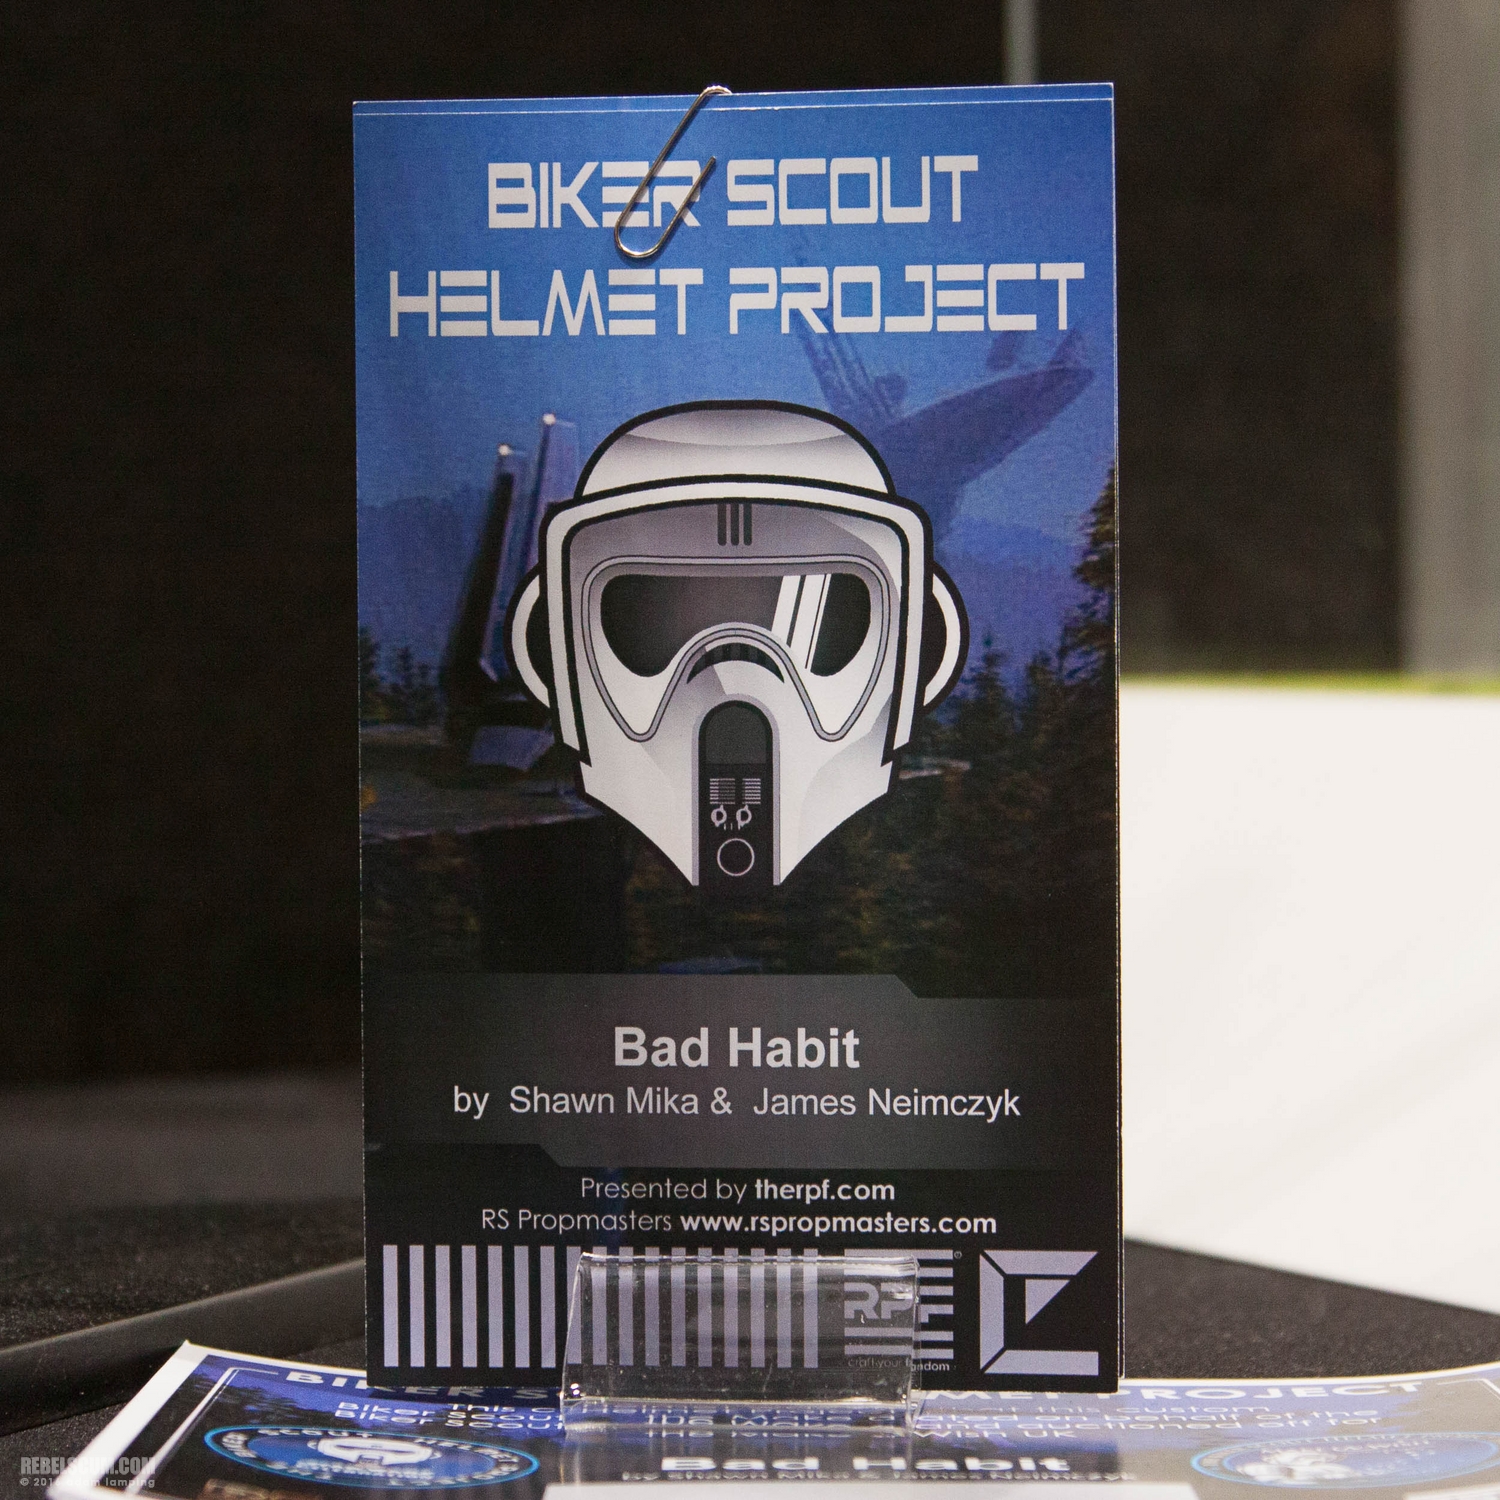 star-wars-celebration-2016-biker-scout-helmet-project-060.jpg